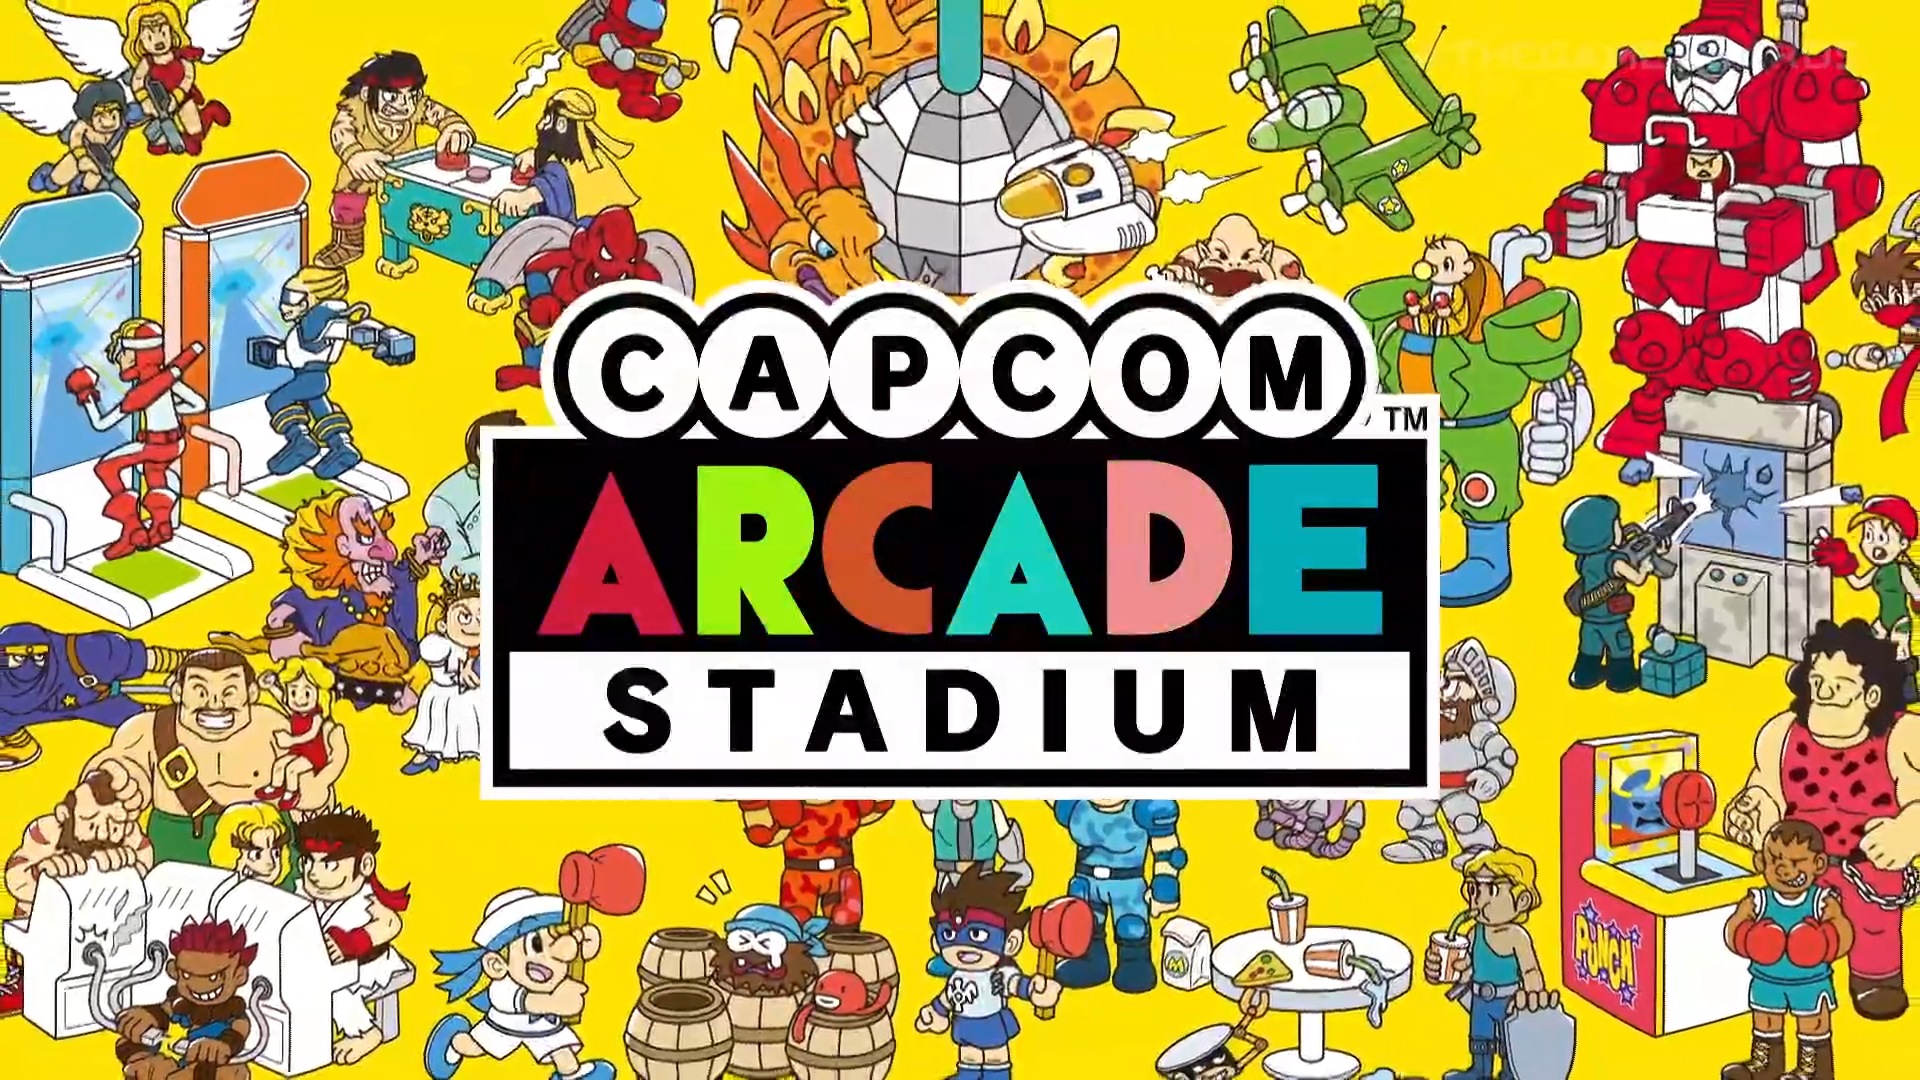 Capcom Arcade Stadium 12 10 20 1